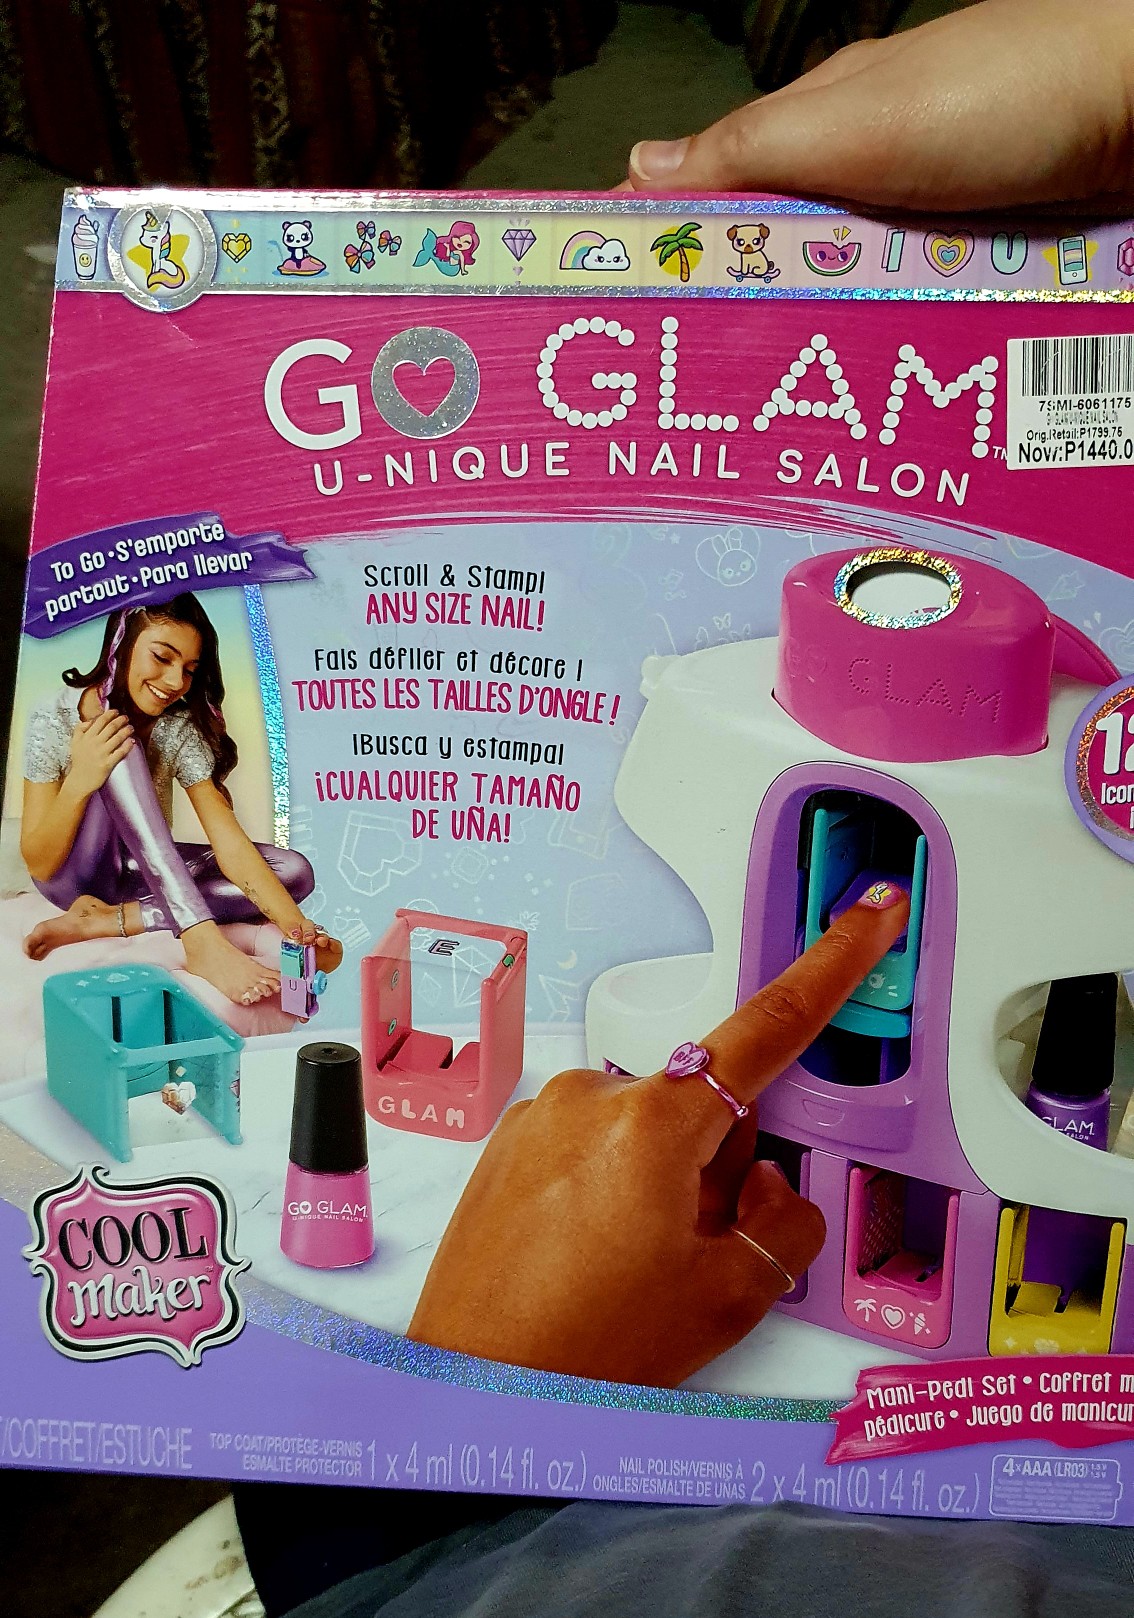 COOL MAKER - Go Glam U-nique Nail Salon - 6061175 - Machine à